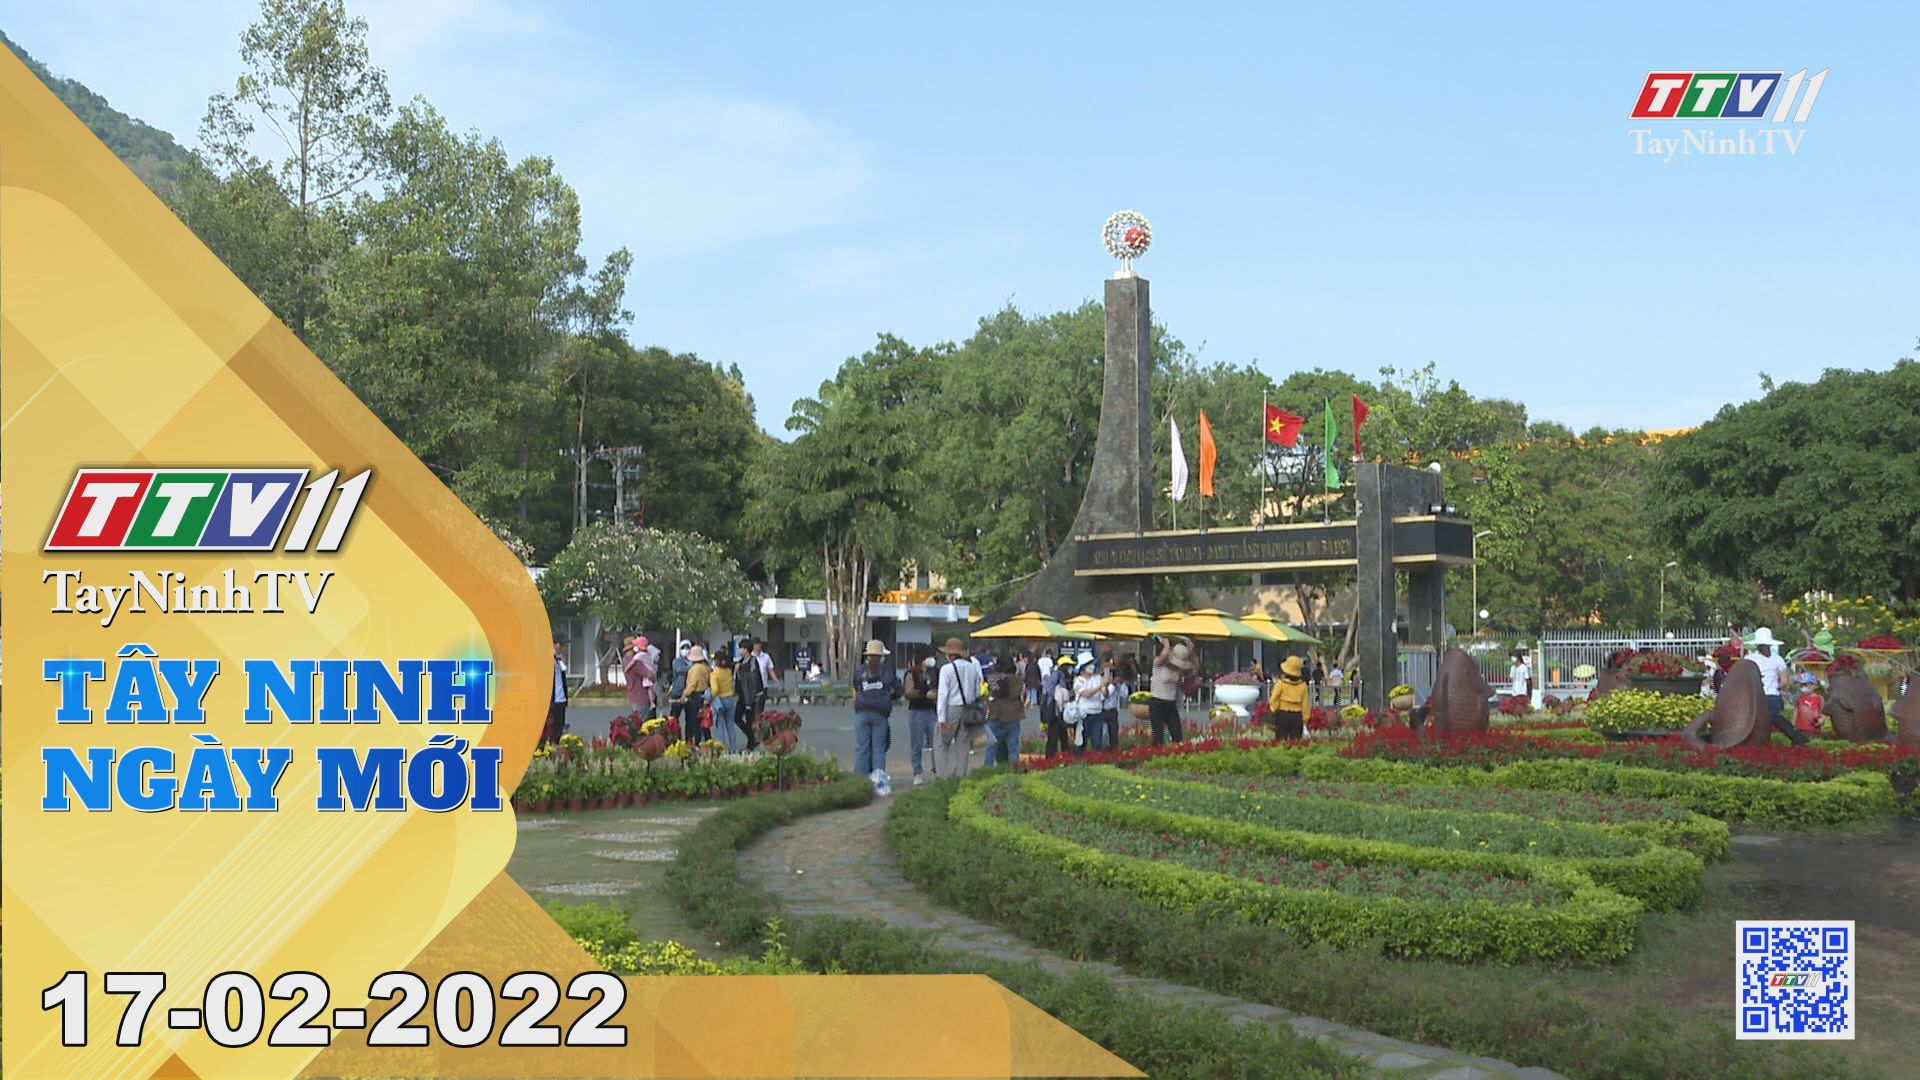 Tây Ninh ngày mới 17-02-2022 | Tin tức hôm nay | TayNinhTV